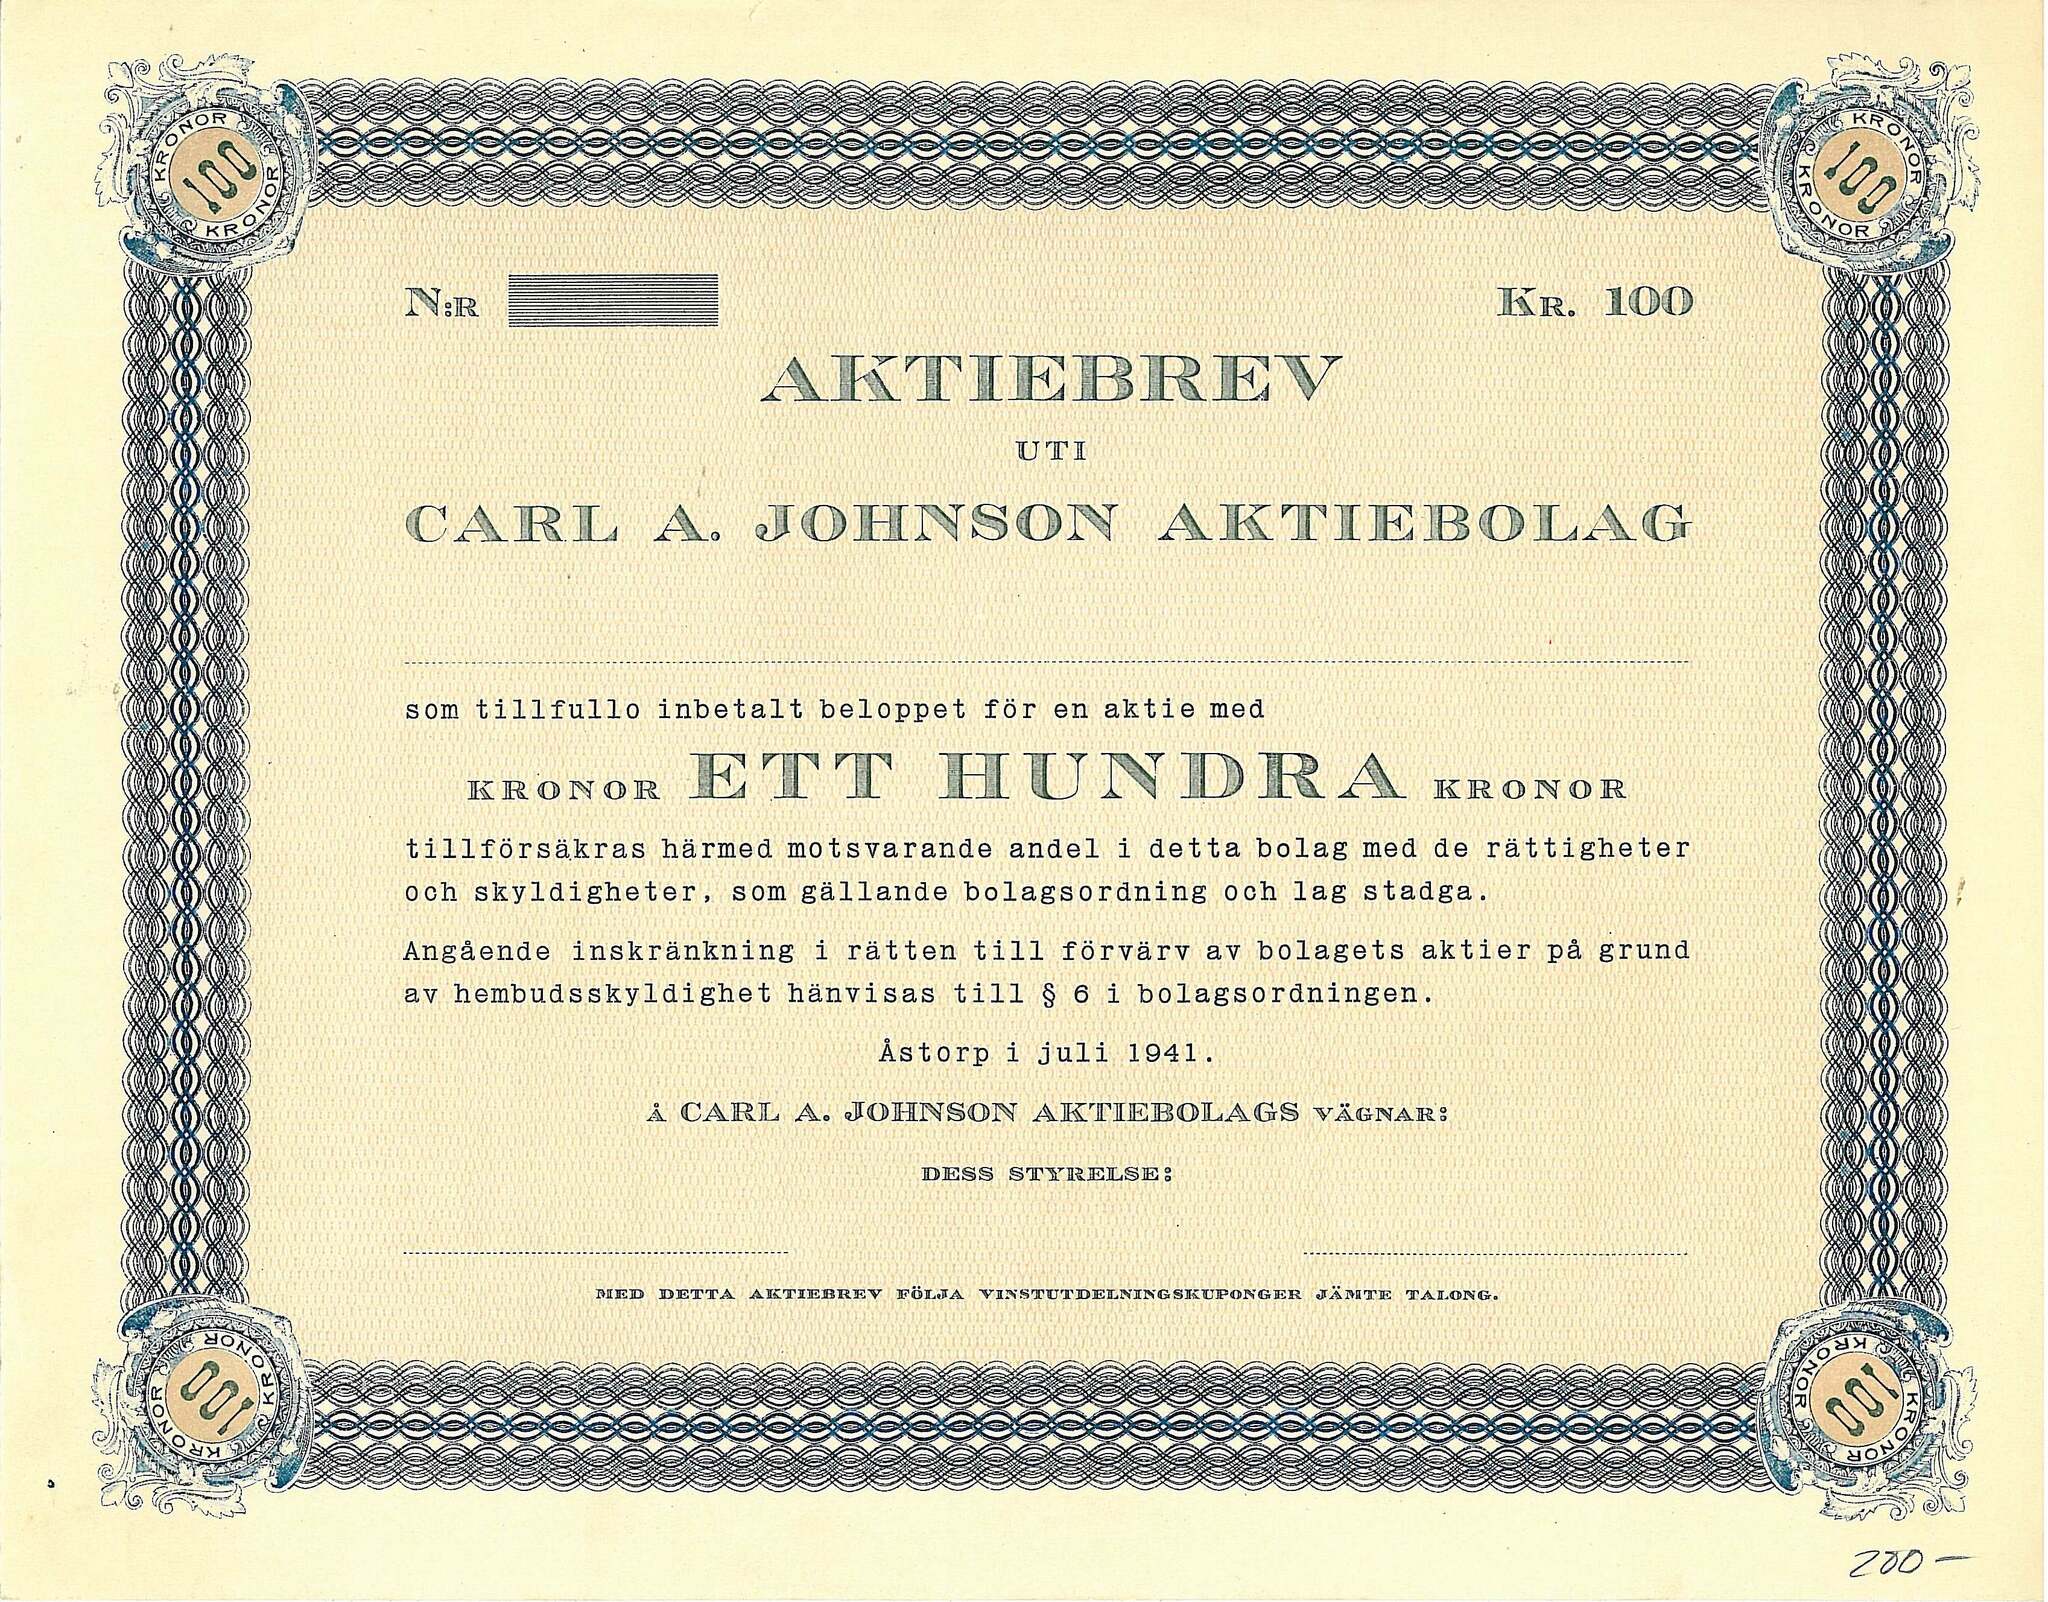 Carl A. Johnson AB